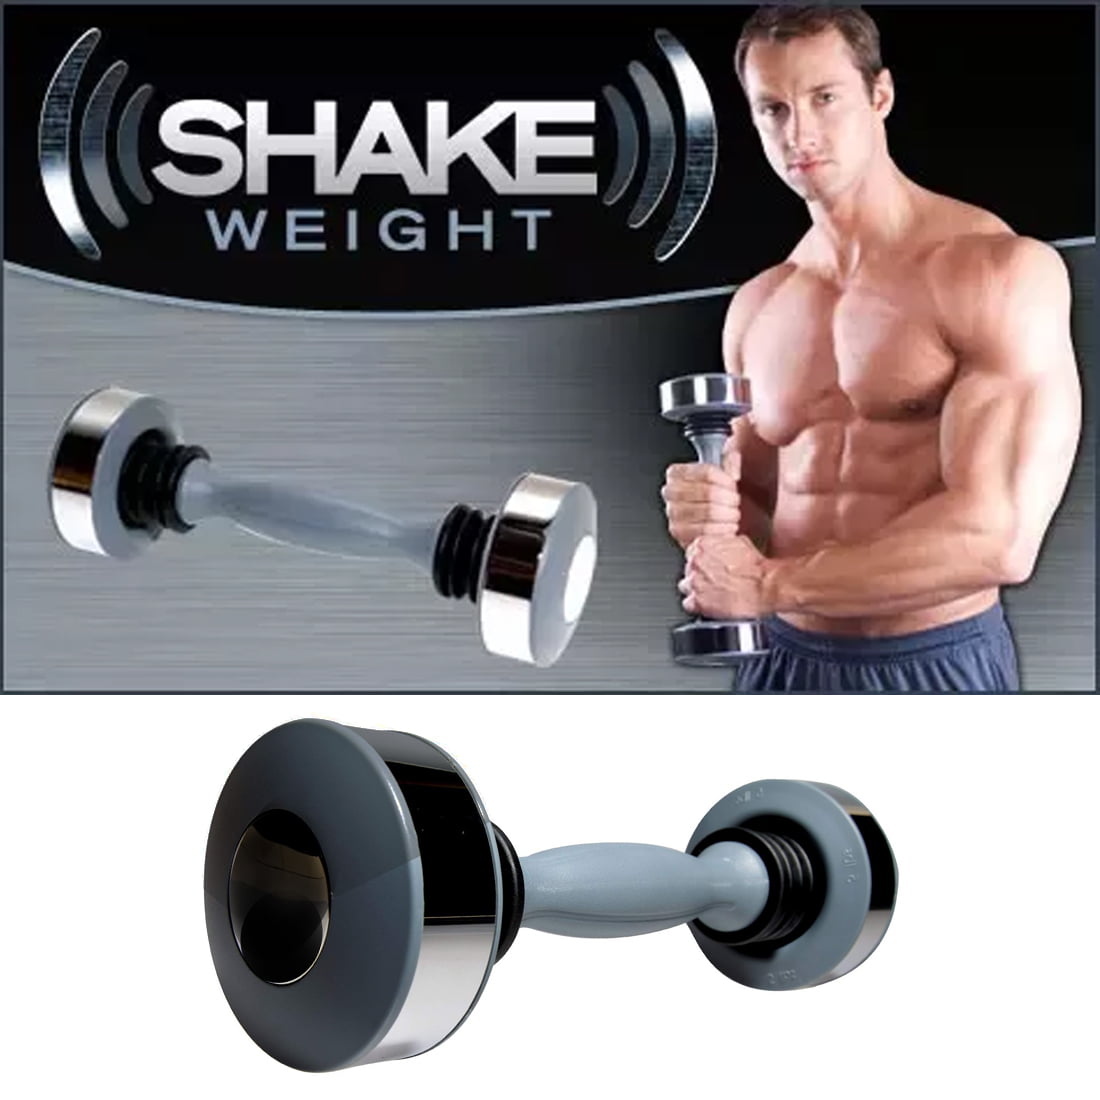 shake weights